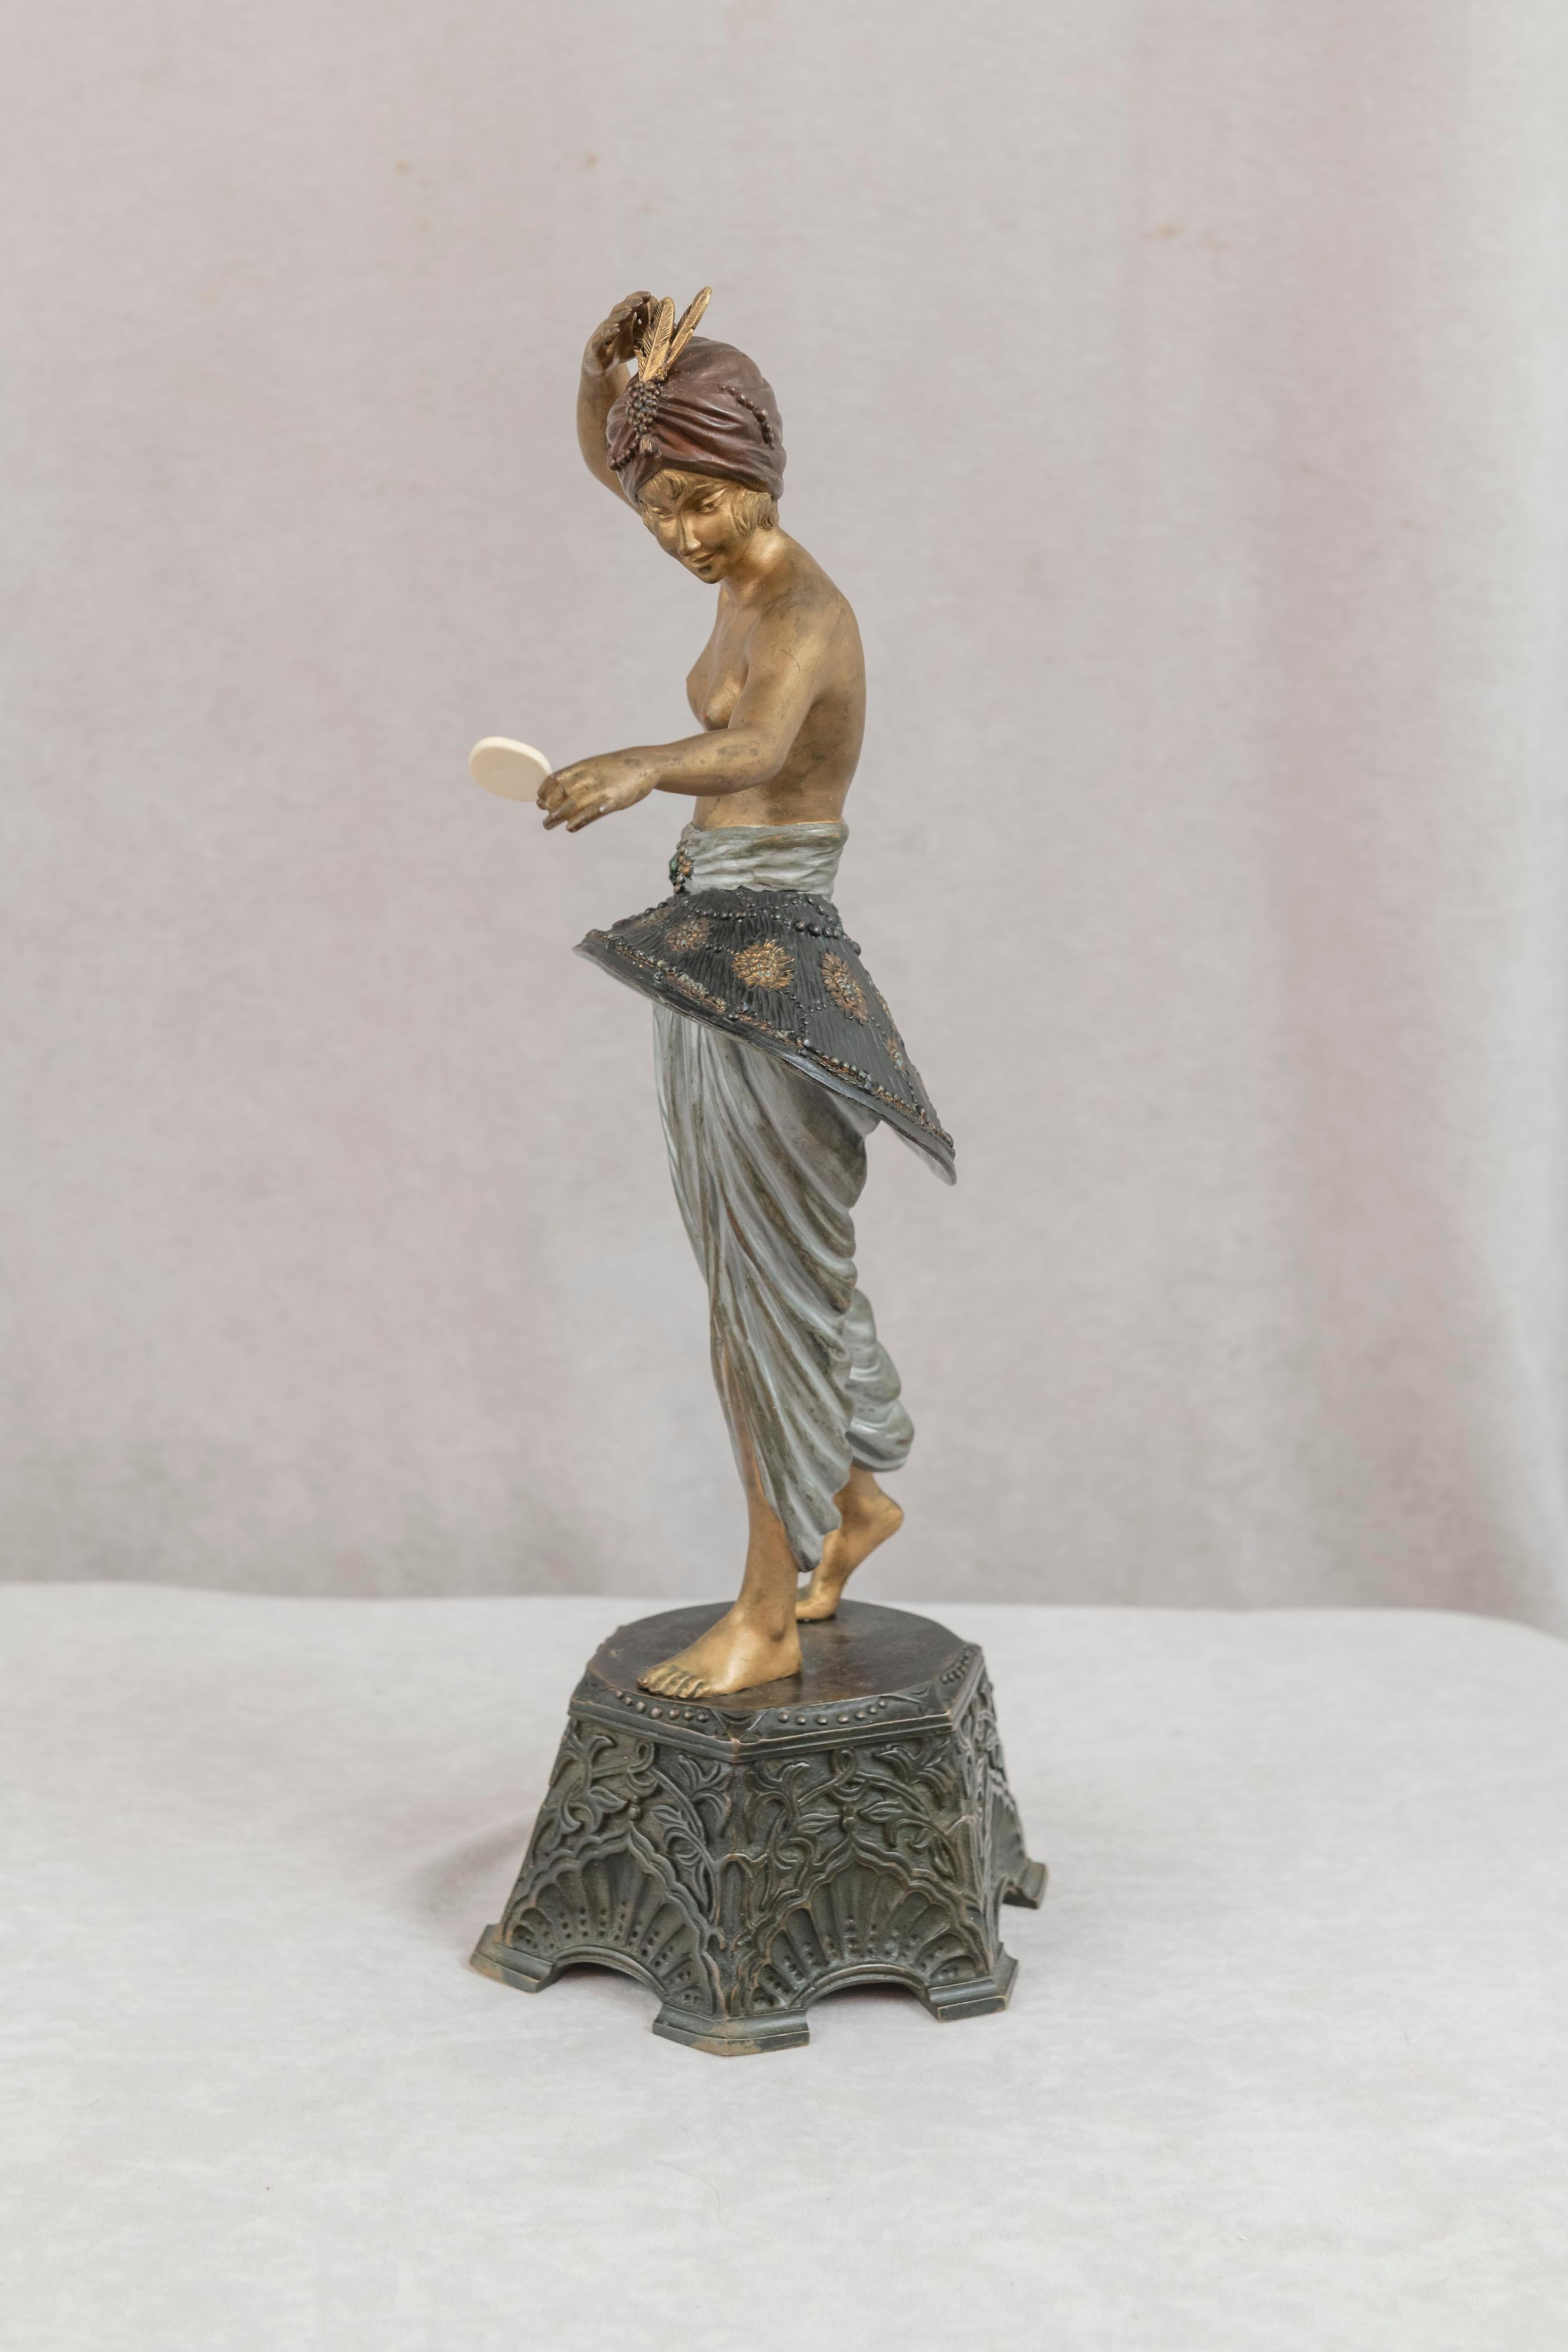 Ce grand bronze très spécial a été réalisé par Pierre le Faguays (1892-1962), artiste très respecté de la période Art déco. Ses œuvres ont toujours été parmi les plus recherchées de l'ère Art déco. La danseuse de harem somptueusement peinte se